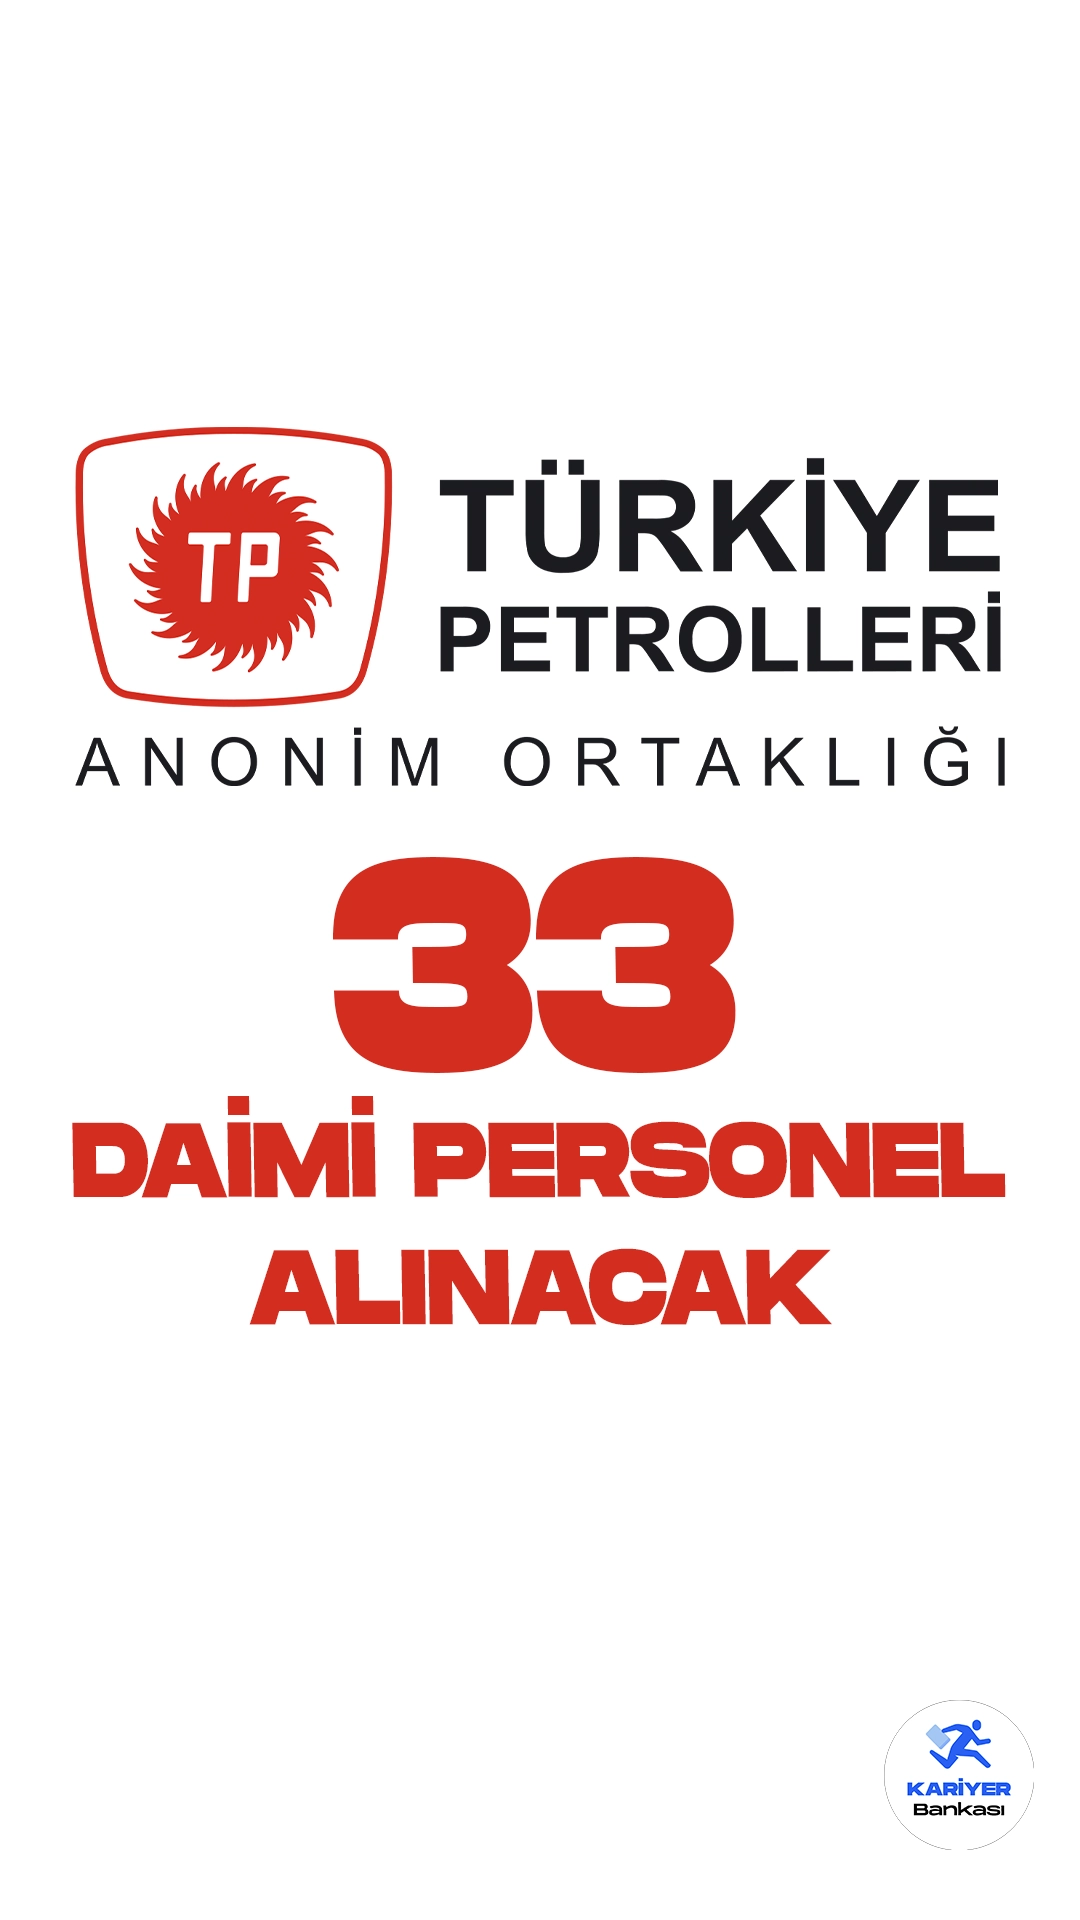 Türkiye Petrolleri Anonim Ortaklığı (TPAO) daimi personel alımı duyurusu yayımlandı. İlgili alım duyurusuna göre, TPAO'ya üretim operatörü yardımcısı, elektrikçi, ambarcı, servis görevlisi-b, inşaat teknisyeni-b, iş güvenliği teknisyeni-b, denetim ve kontrol sorumlusu, sistem destekçisi ( bilgi sistemleri), arşivci-b, muhasebe servis görevlisi-b, tedarik ve lojistik görevlisi-b, elektronikçi, ağır vasıta operatör yardımcısı ünvanlarında olmak üzere daimi personel alımı yapacak.